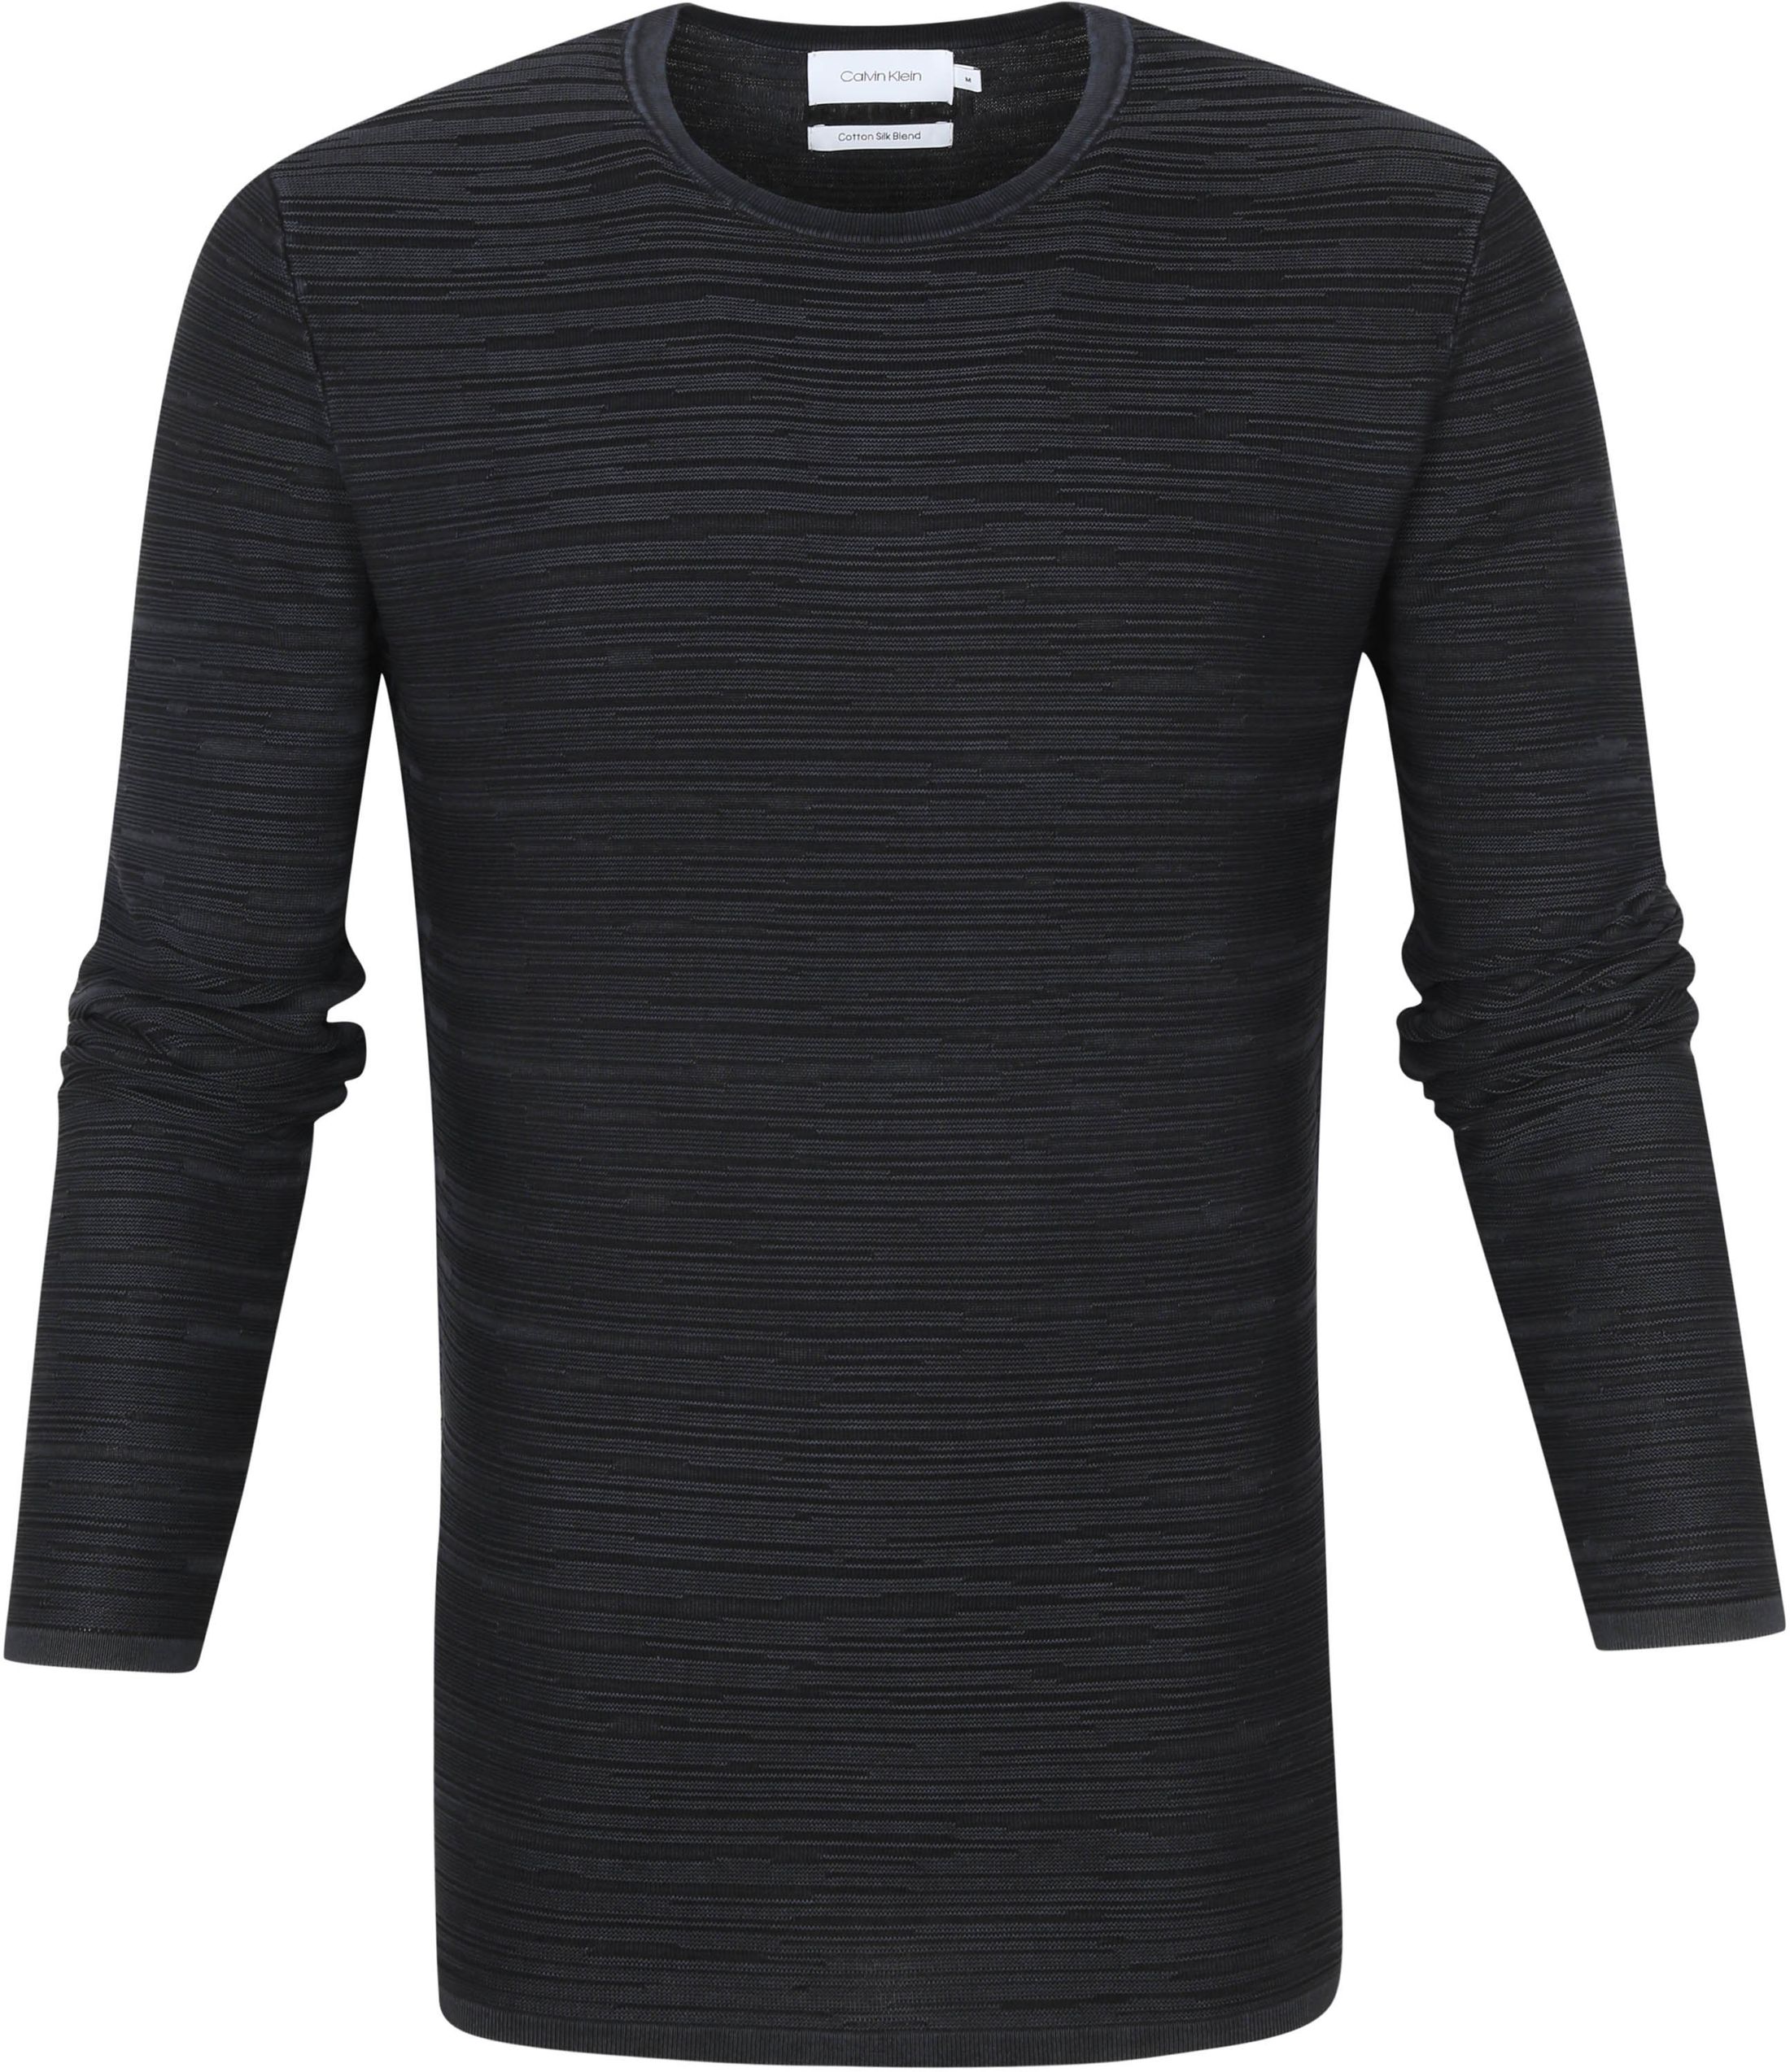 Calvin Klein Sweater Texture Black size M